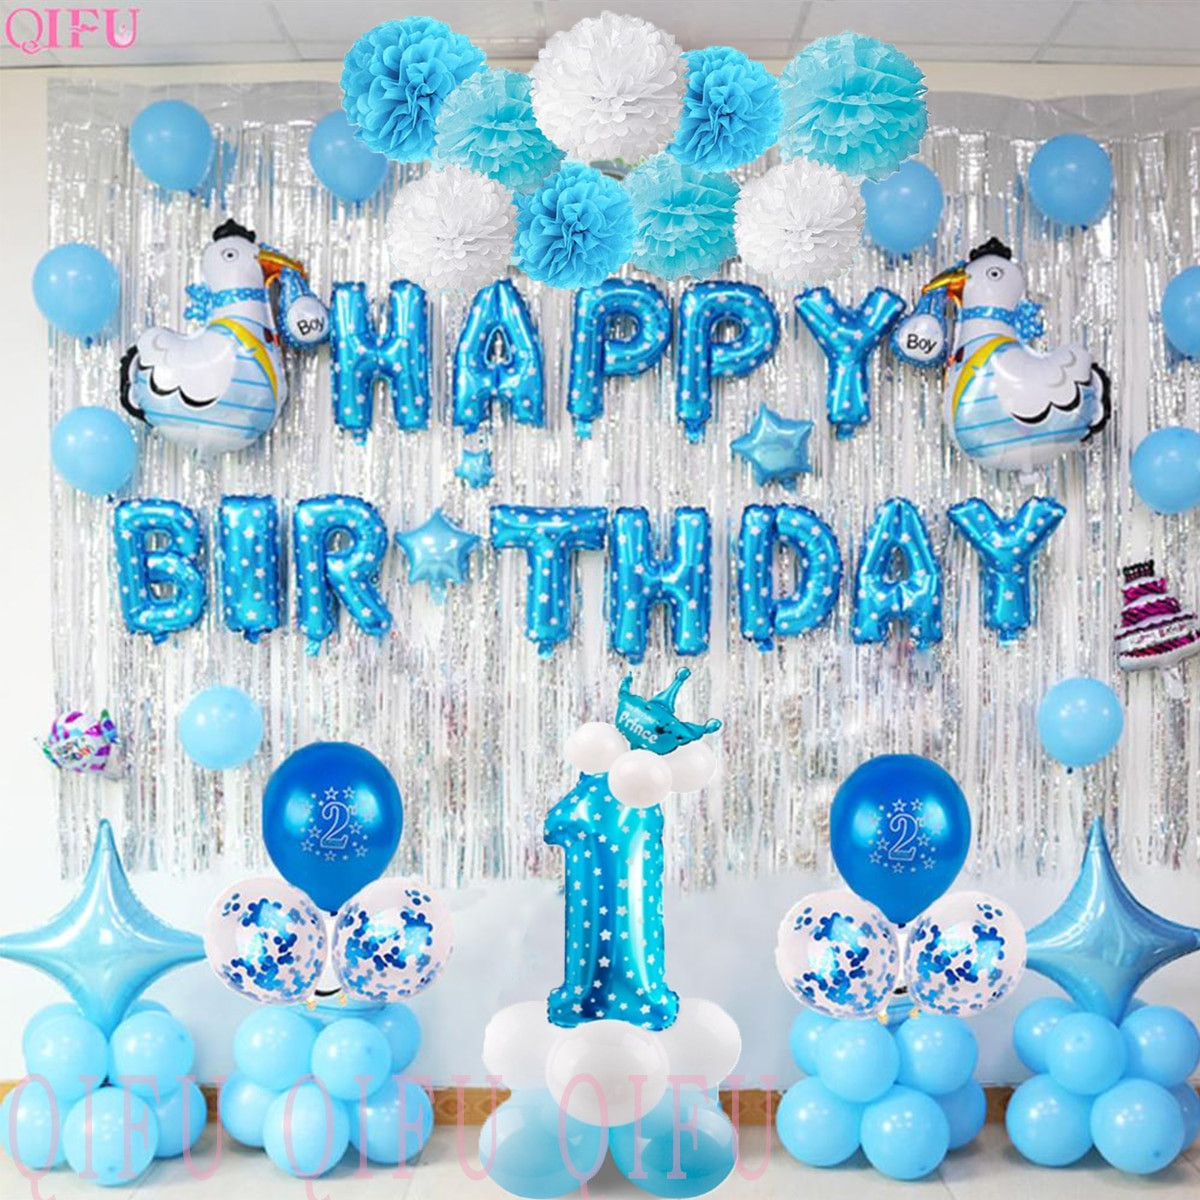 Birthday Decoration Ideas For Baby Boy
 QIFU 1 Birthday Boy 1st Birthday Party Decorations Kids My